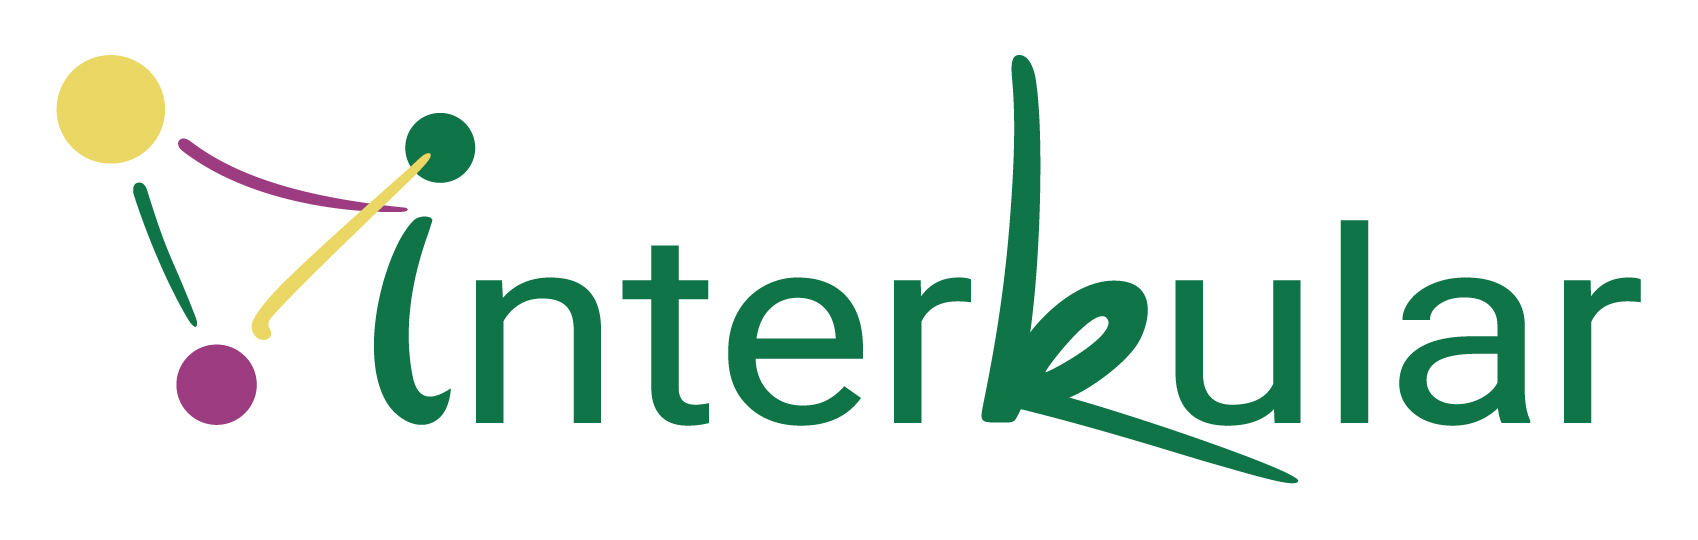 Interkular_Logo